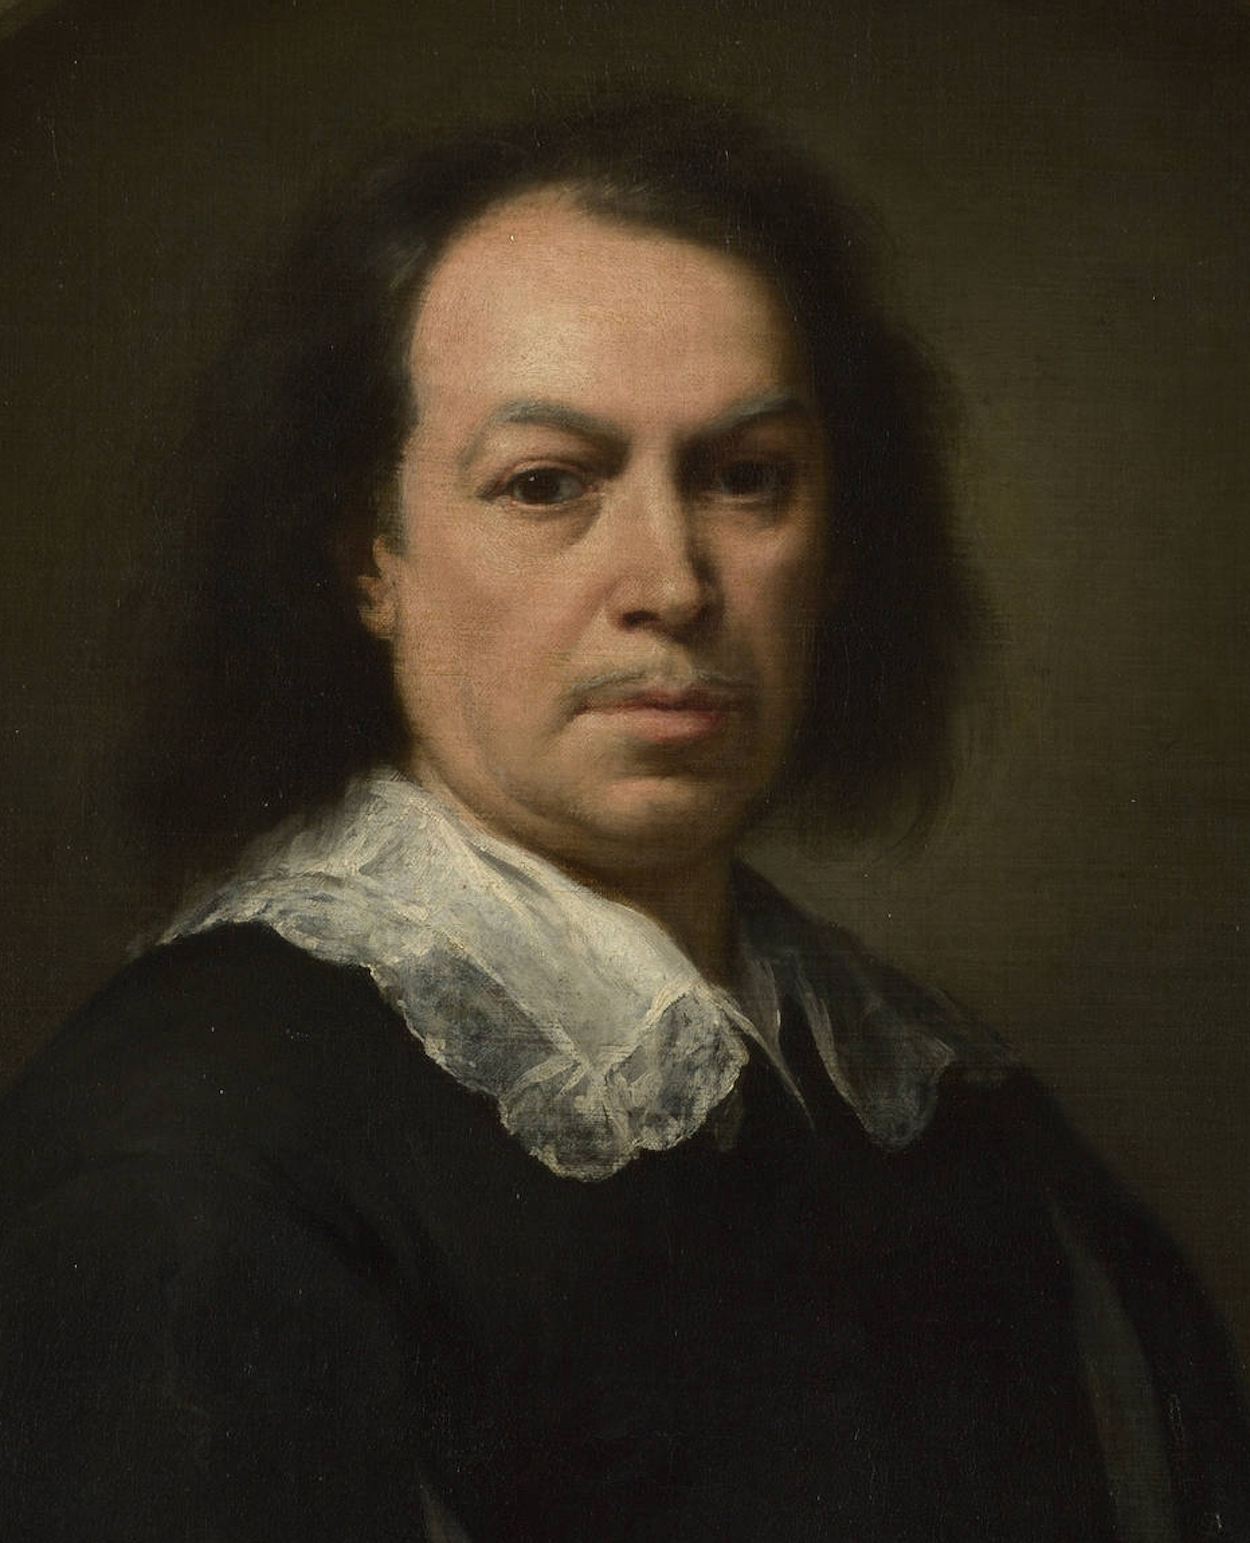 Bartolomé Esteban Murillo - December 1617 - 3 April, 1682